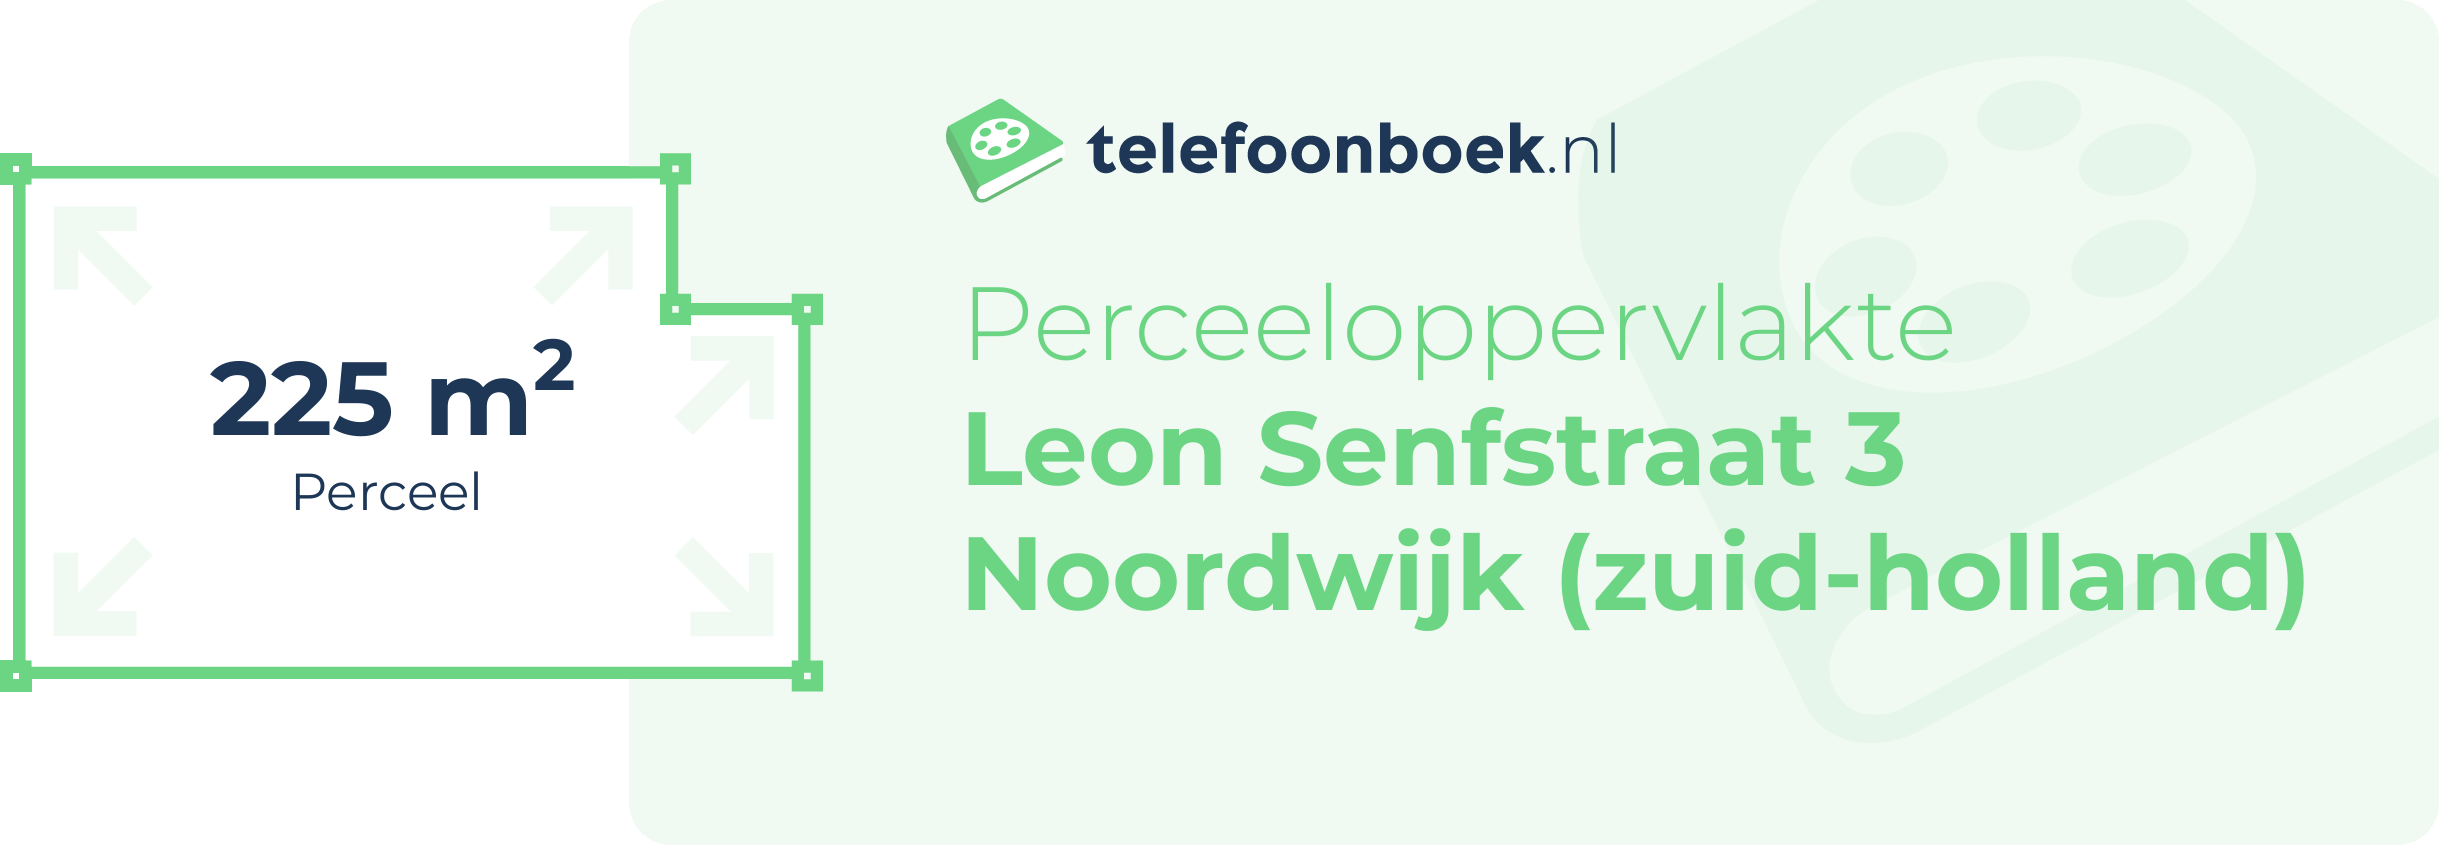 Perceeloppervlakte Leon Senfstraat 3 Noordwijk (Zuid-Holland)